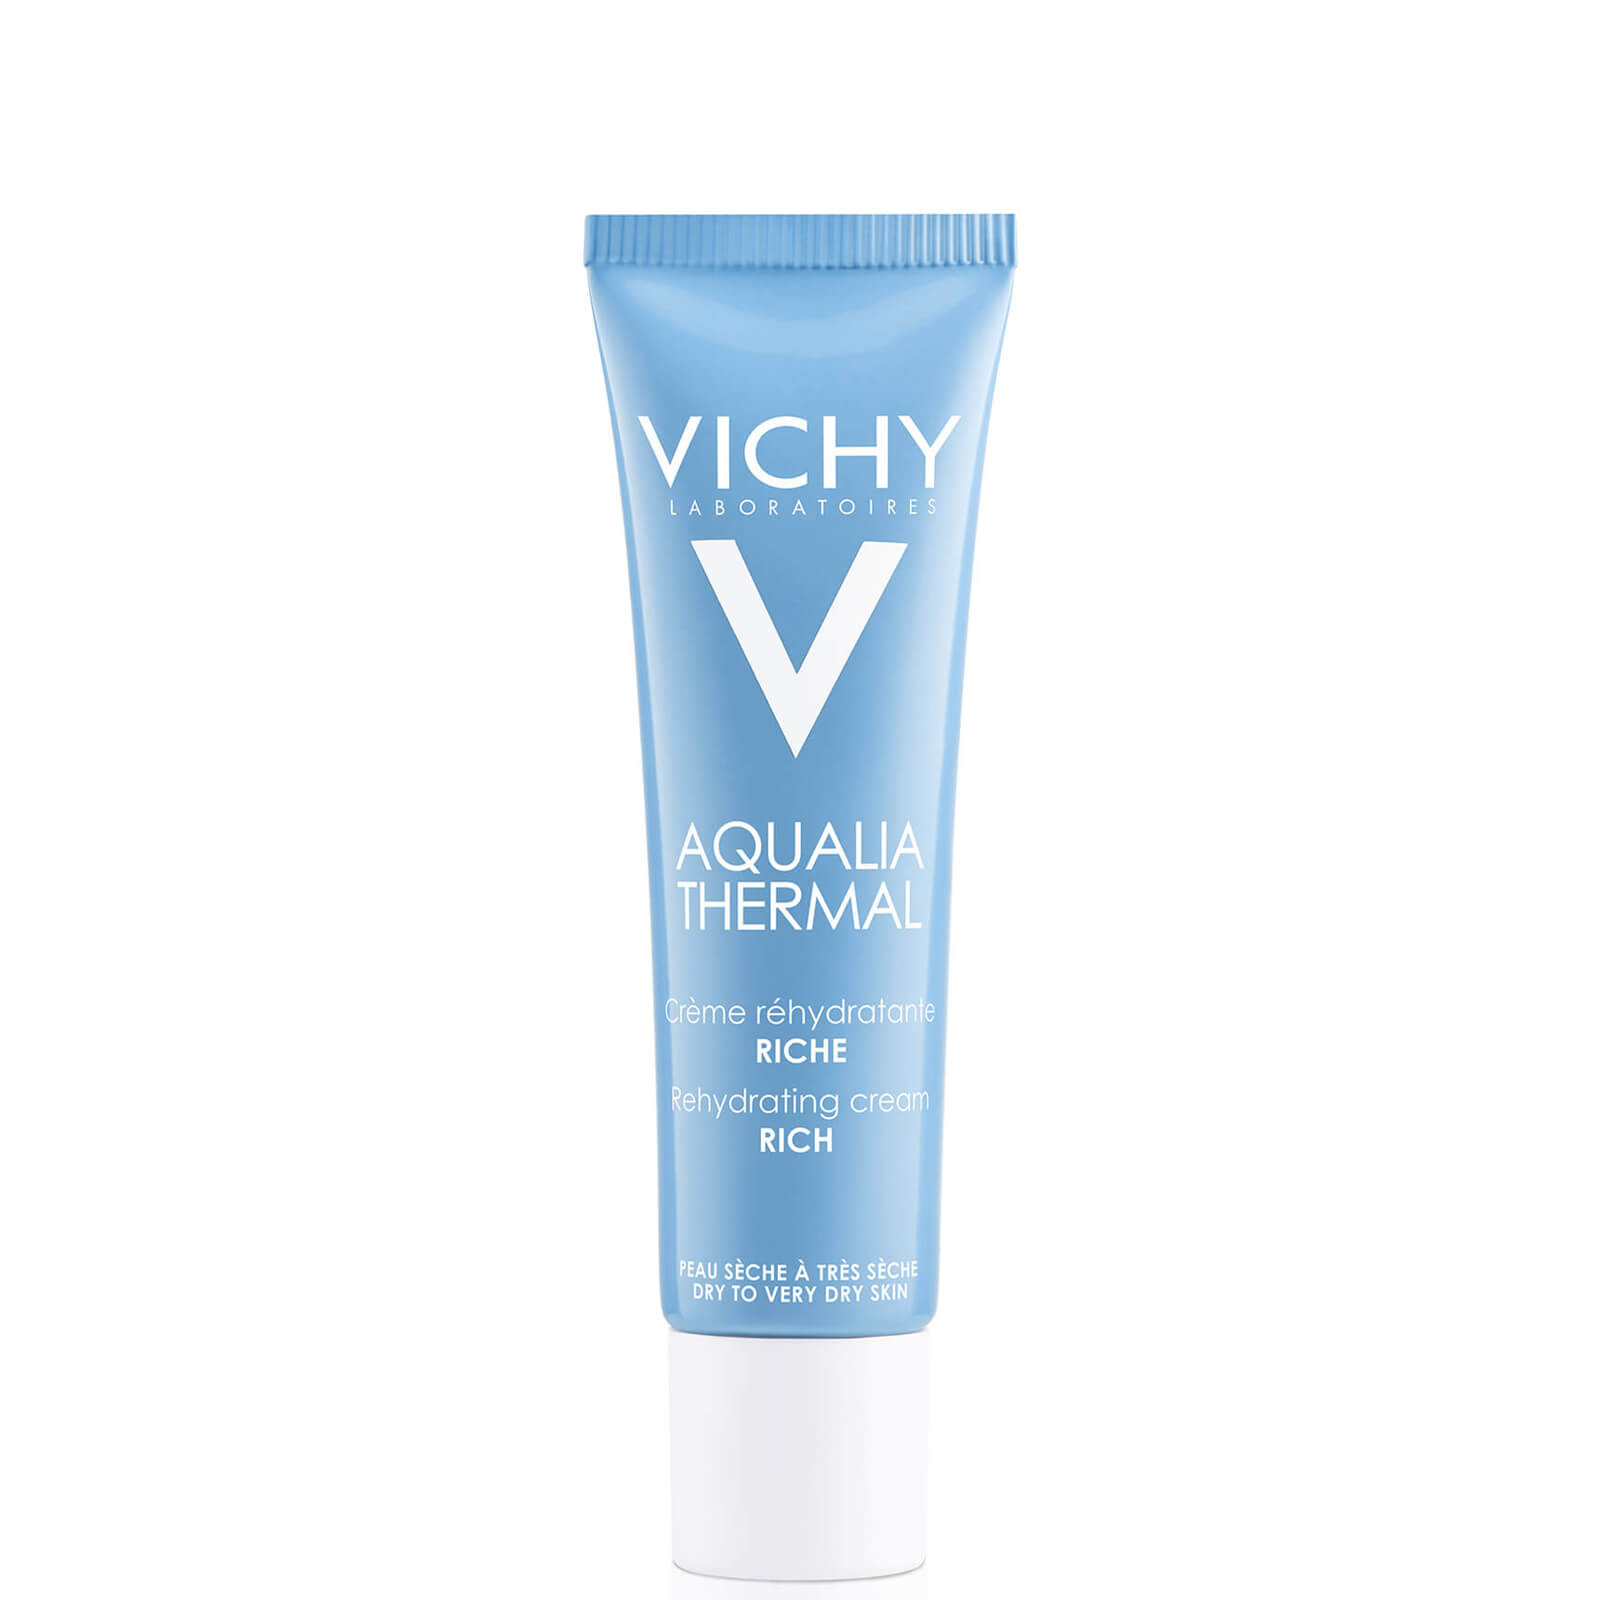 Tubo de crema de textura rica Aqualia Thermal de Vichy 30 ml